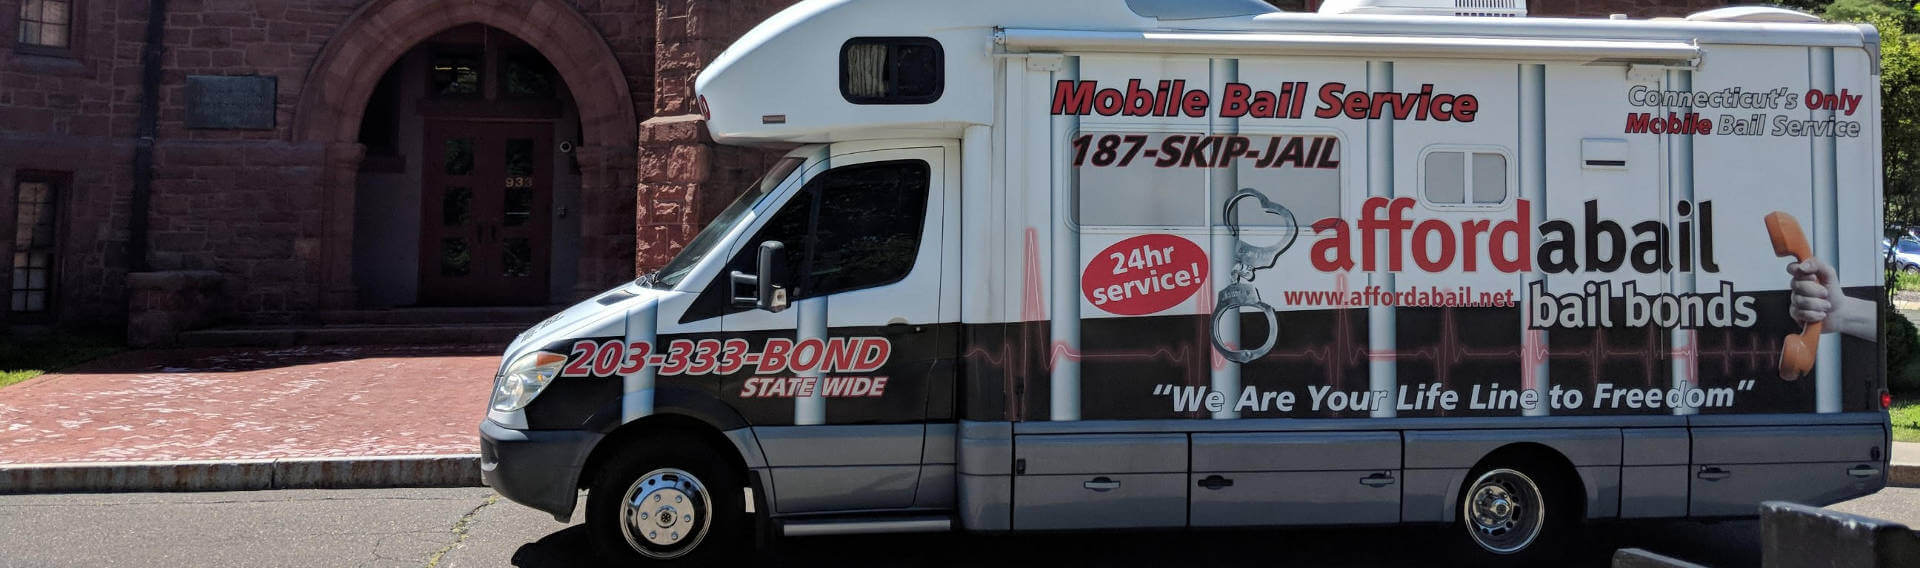 Mobile bail bonds service in New Britain CT